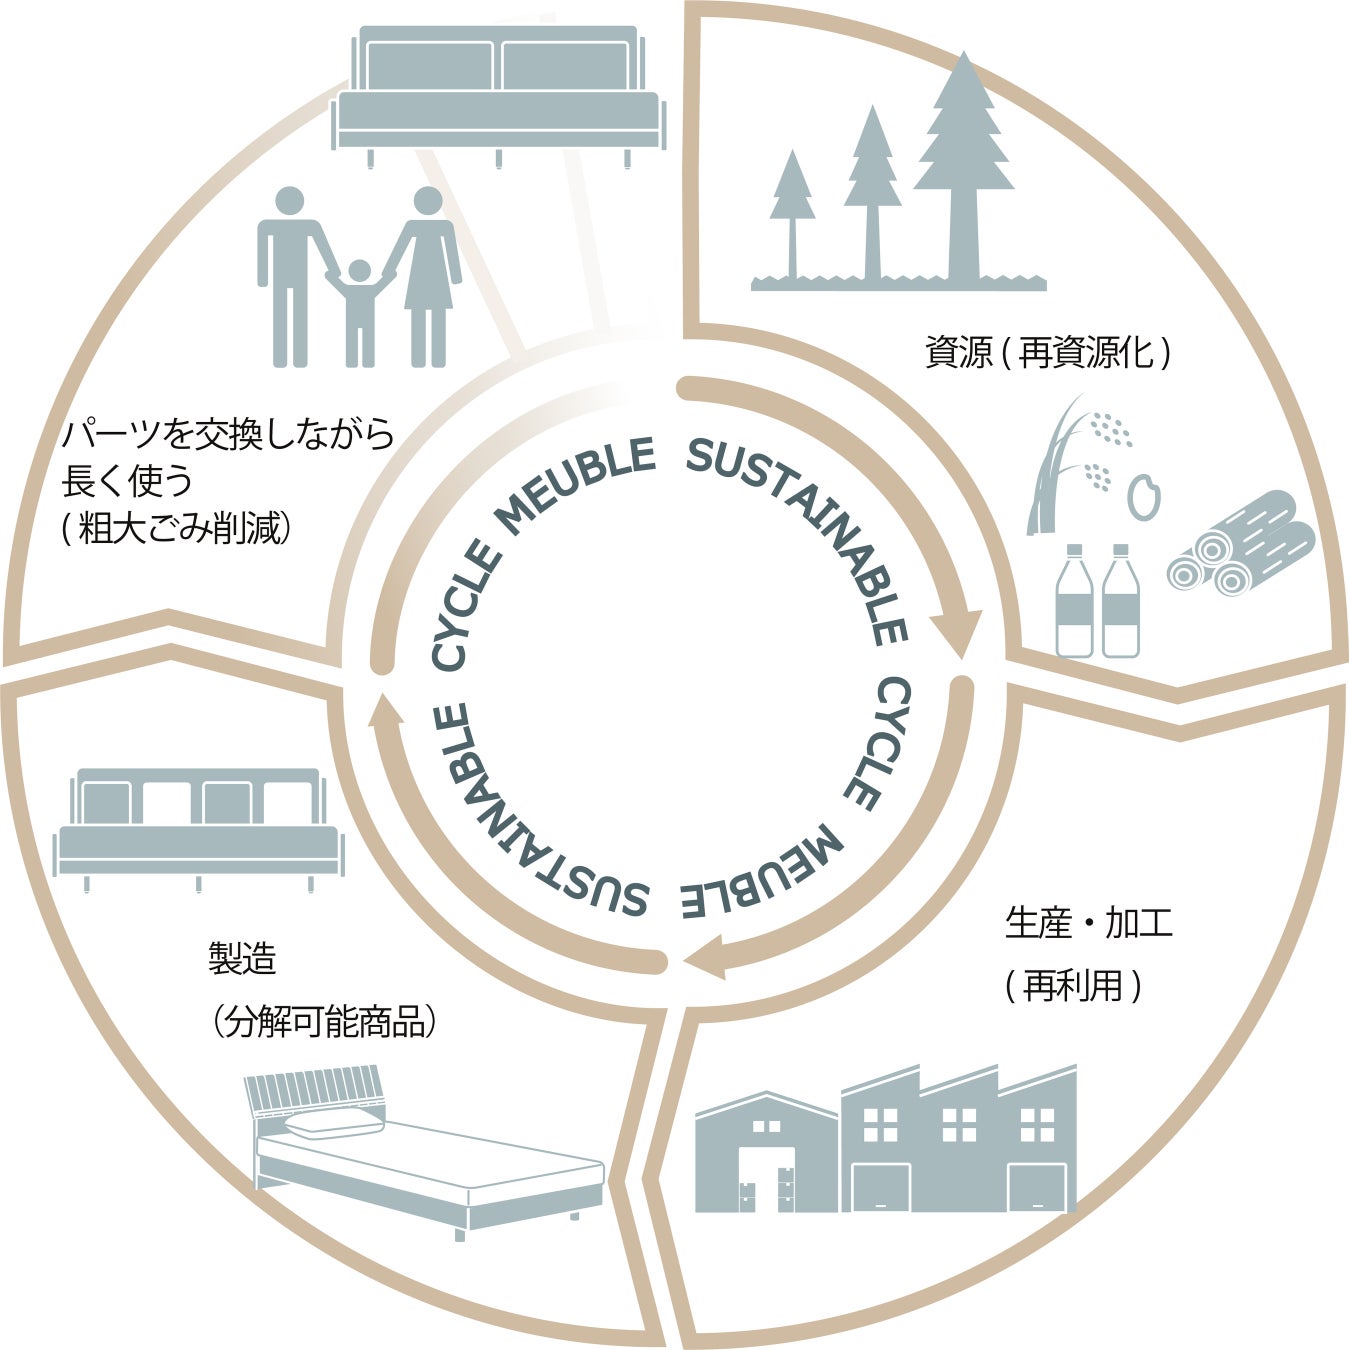 【日本初※1】モーブル、随所にサステナブル素材を使用した“SDGsソファ”を1月５日より受注生産販売受付開始のサブ画像6